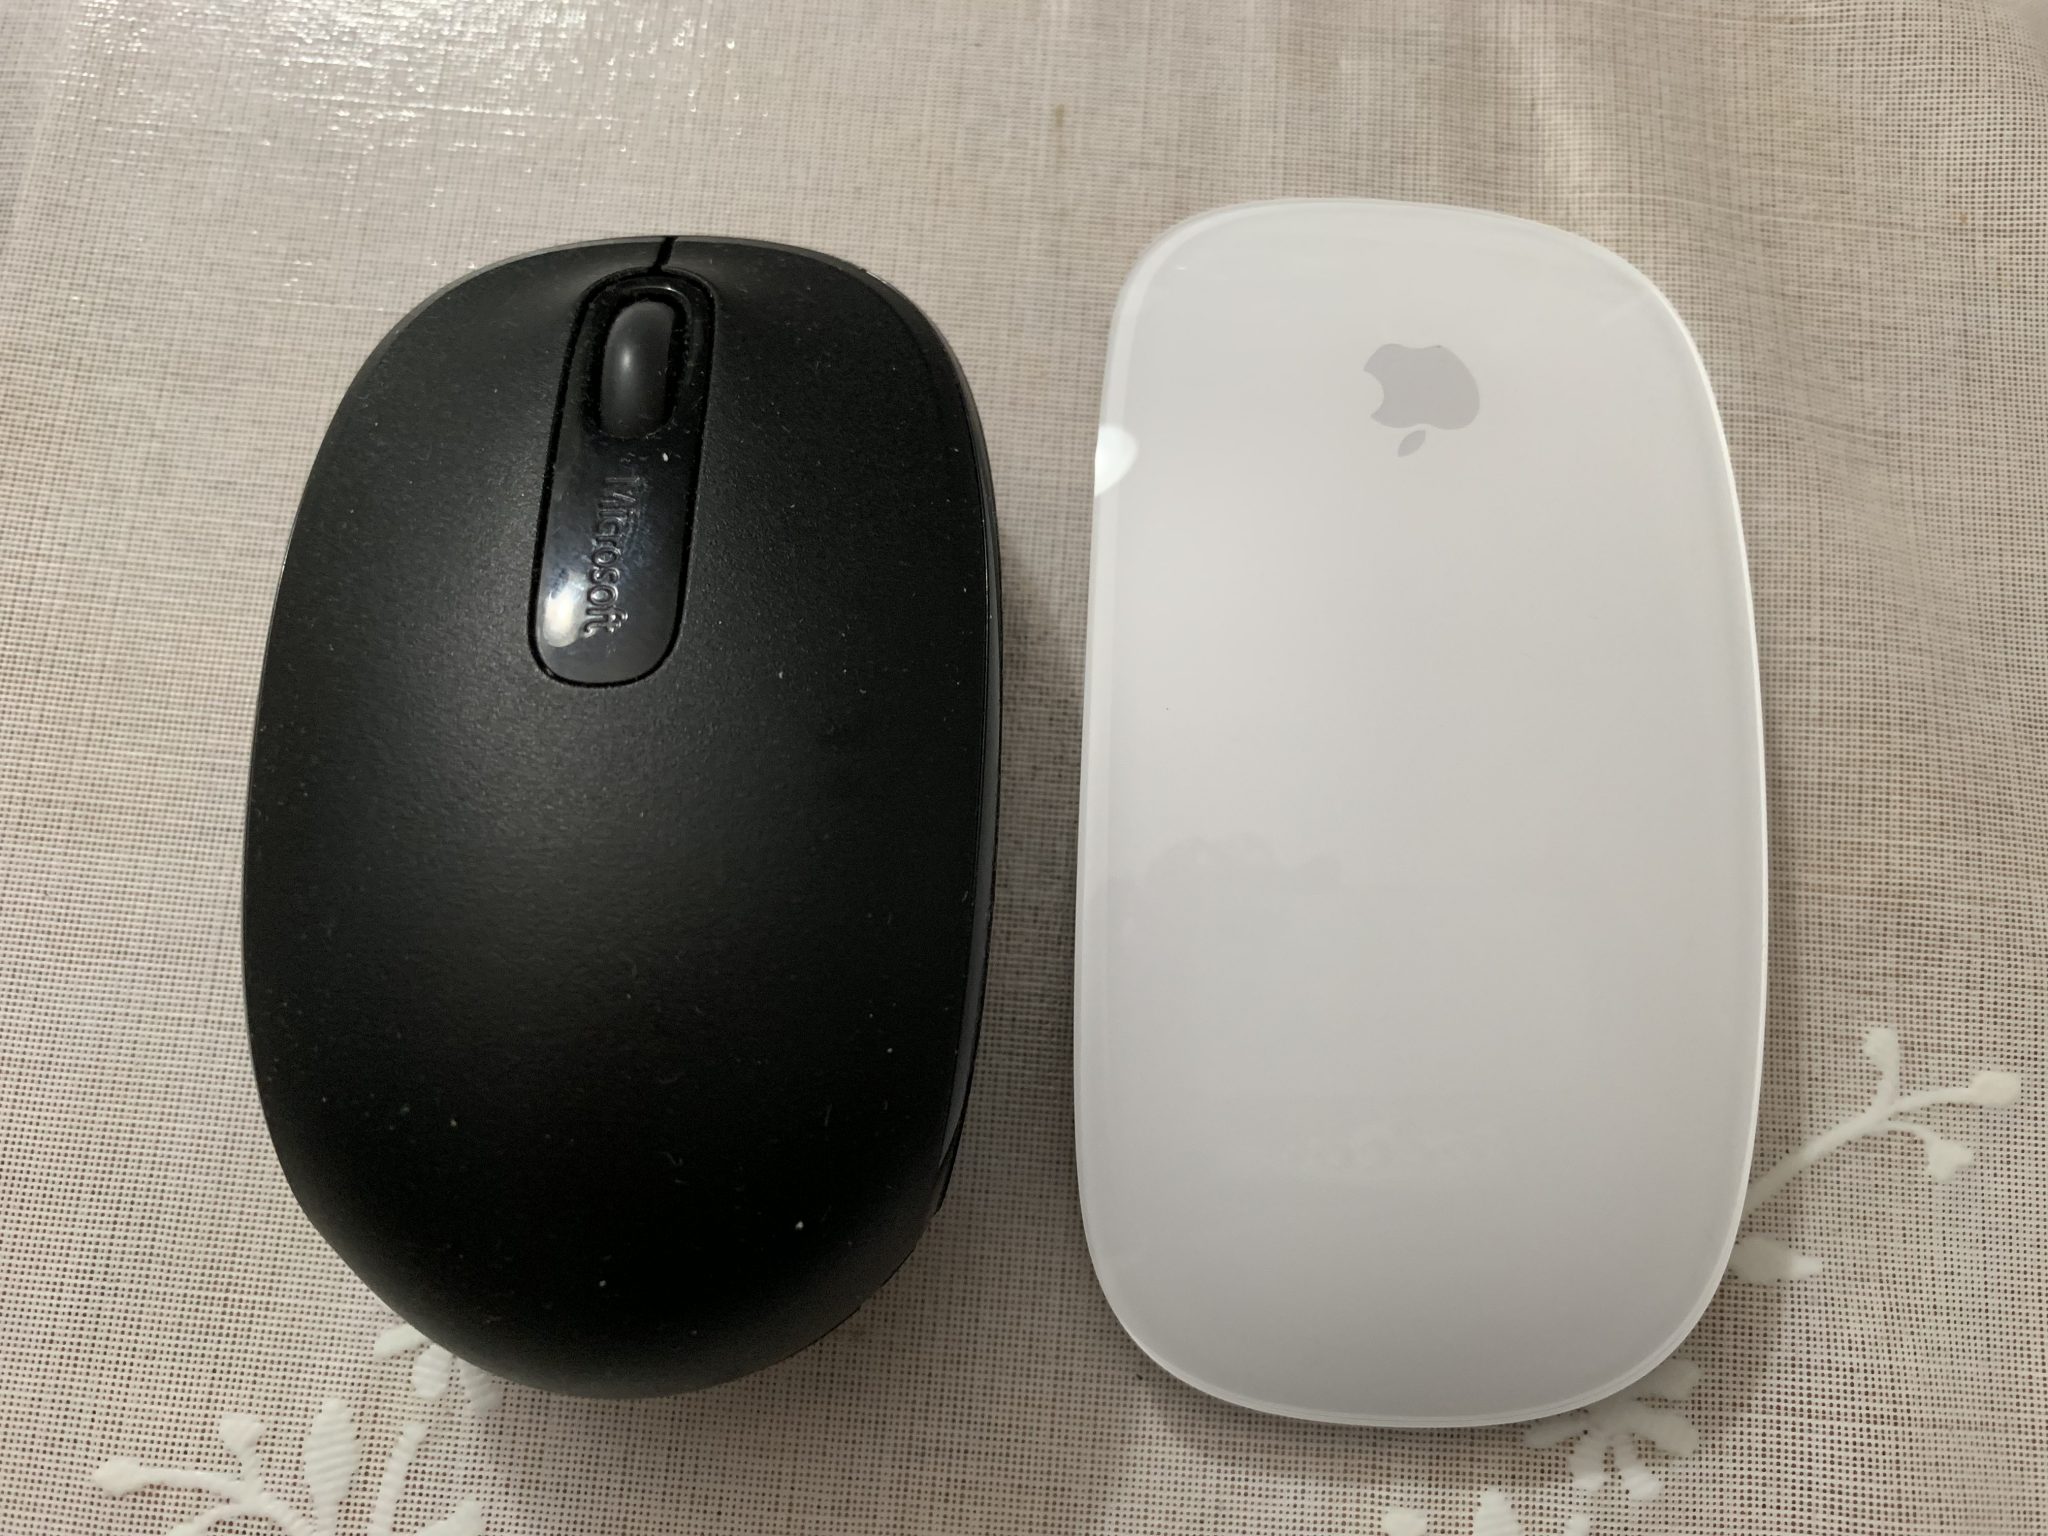 Macbook Air 使い始めて3ヶ月、マウスが恋しくなりMagic Mouse2を衝動買い | ハワイDeハーレー SⅡ